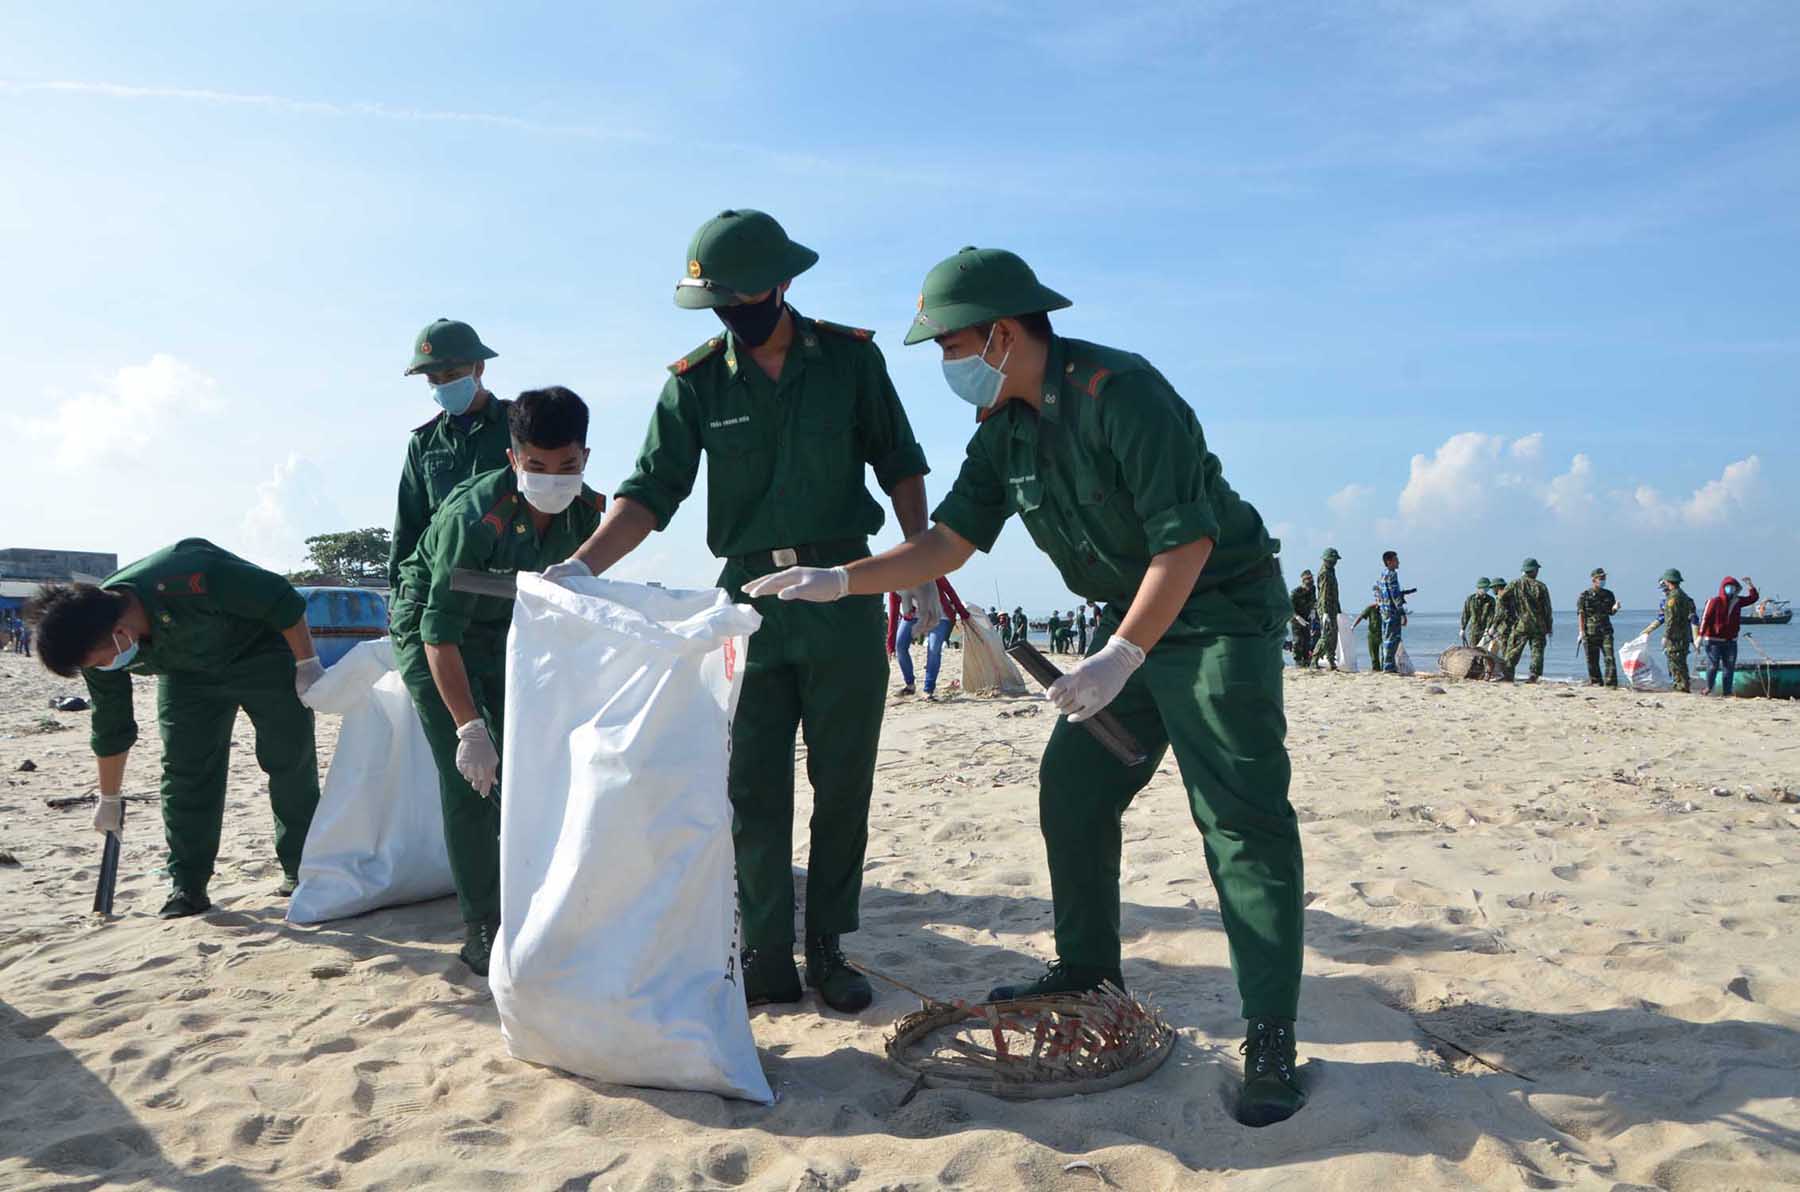 ĐVTN Đồn Biên phòng Long Hải tham gia nhặt rác tại Ao Hải Hà trong chiến dịch “Hãy làm sạch biển” năm 2020. Ảnh: DIỄM QUỲNH